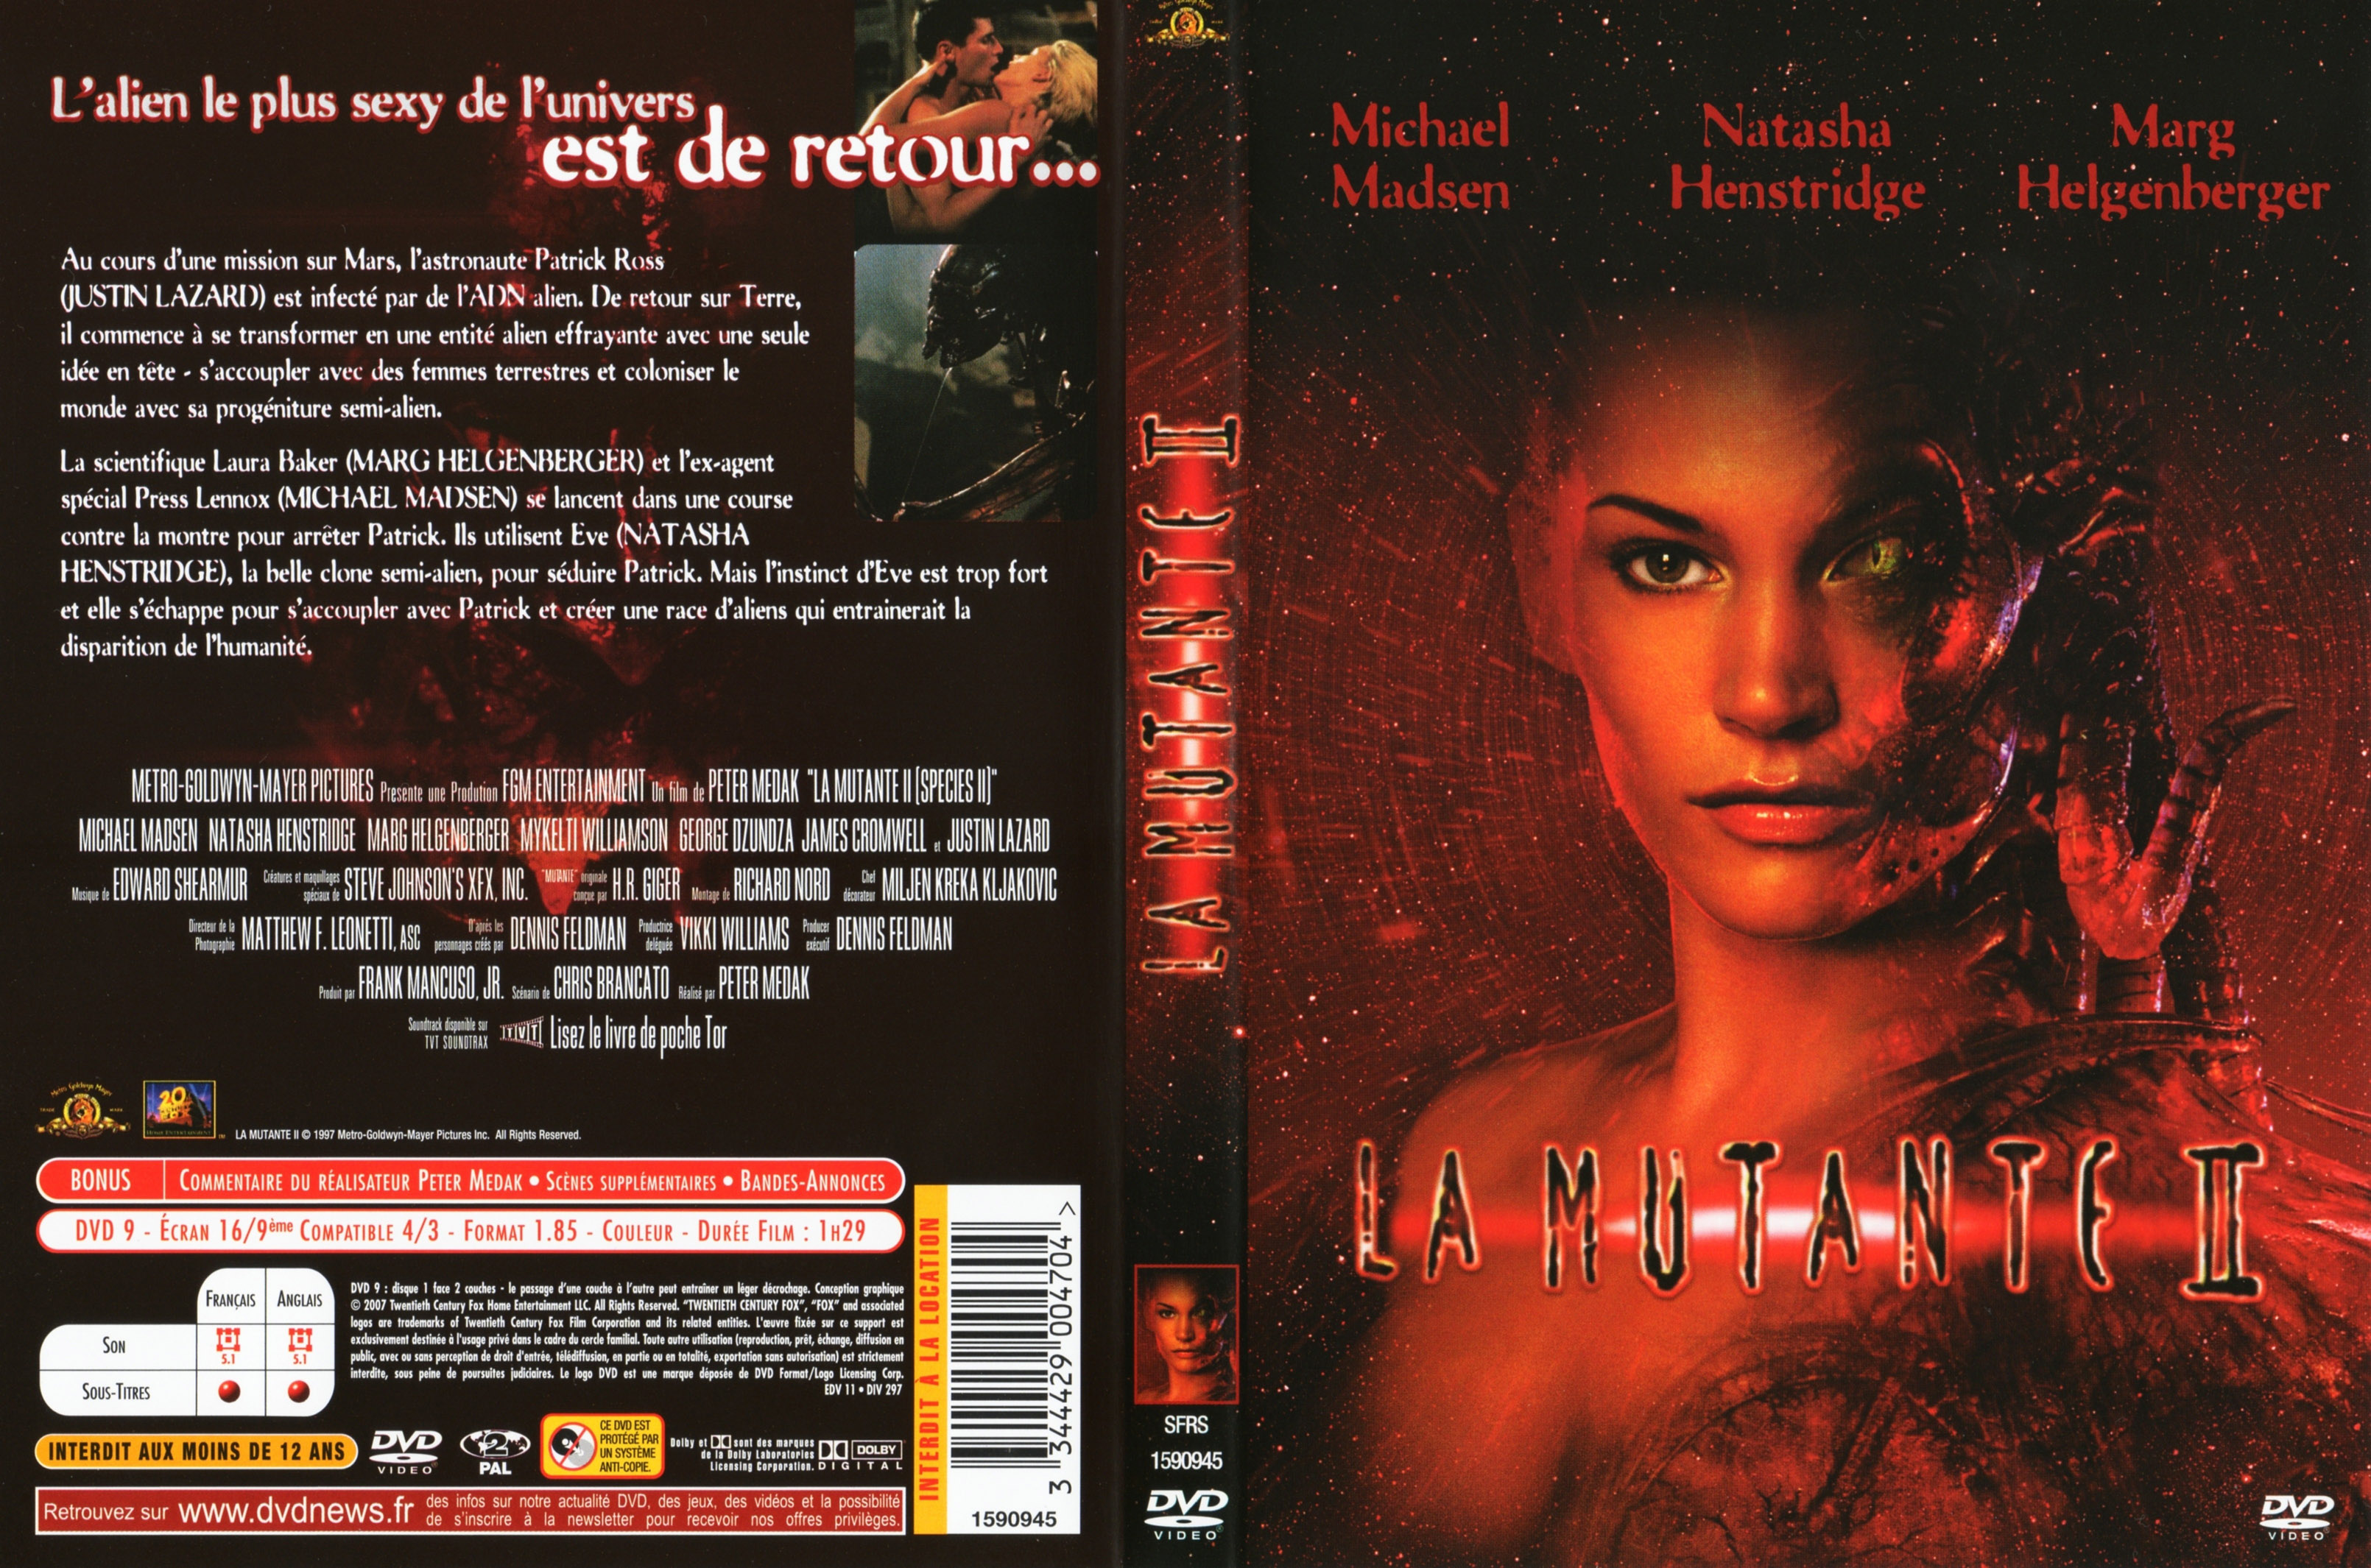 Jaquette DVD La mutante 2 v3